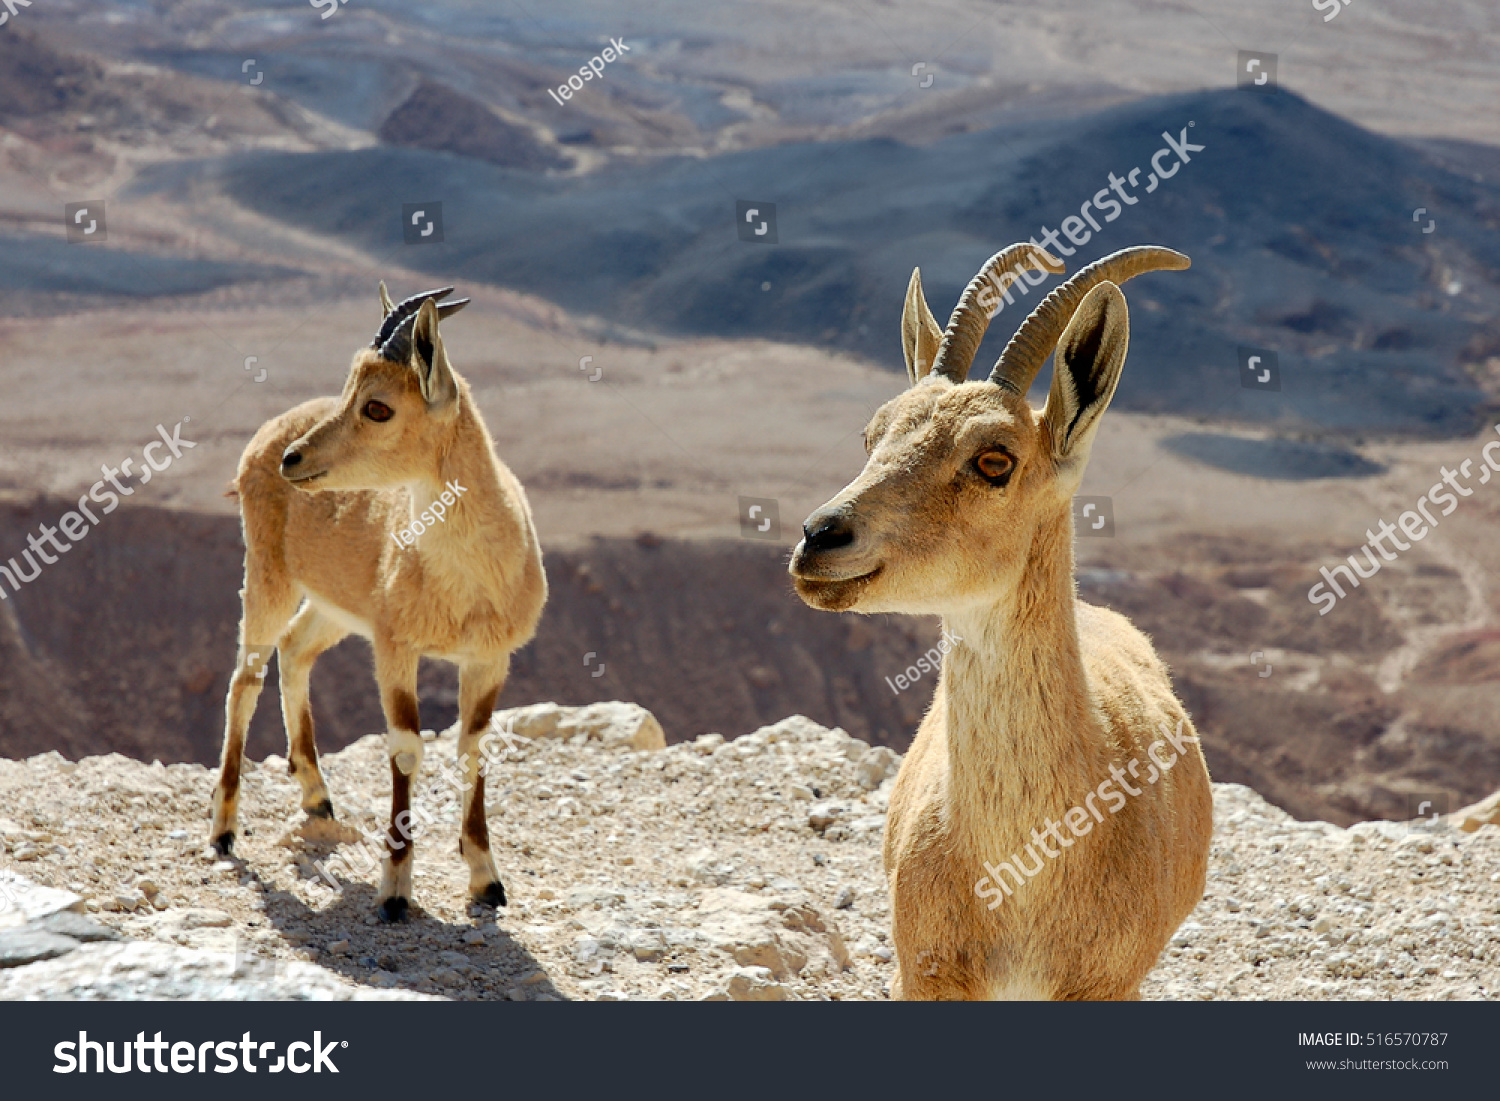 イスラエル ネゲフ砂漠のラモン クレーターの崖っぷちに2本のアイベックス の写真素材 今すぐ編集